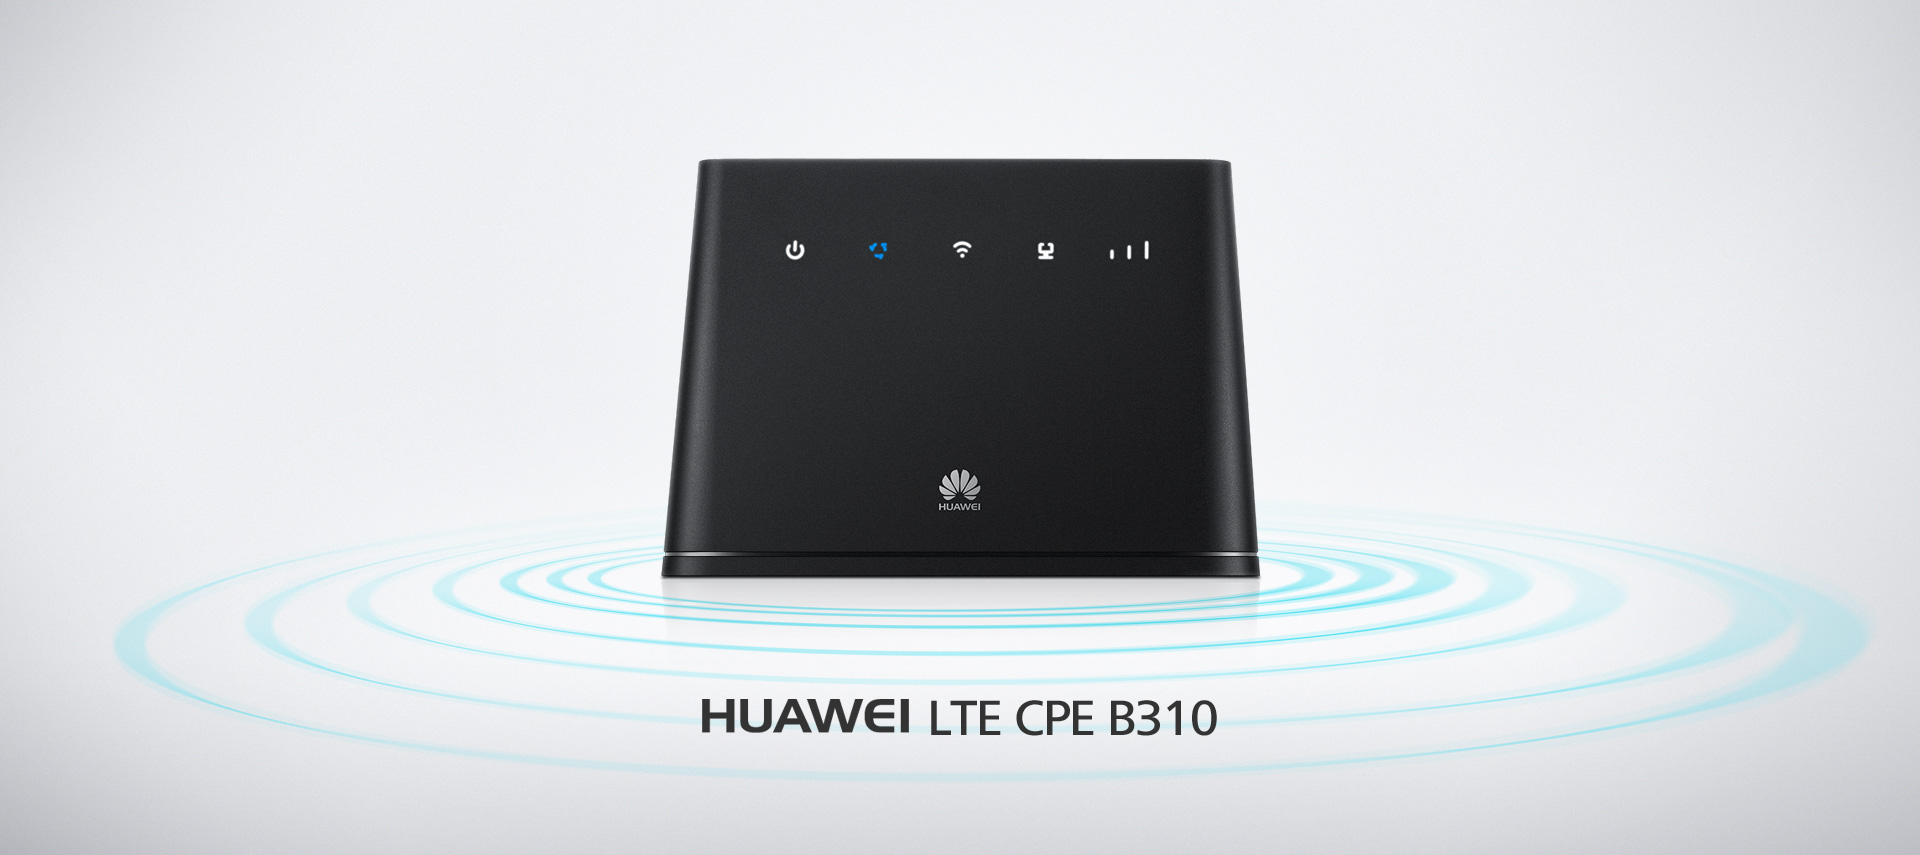 Huawei CPE B310 4G Modem